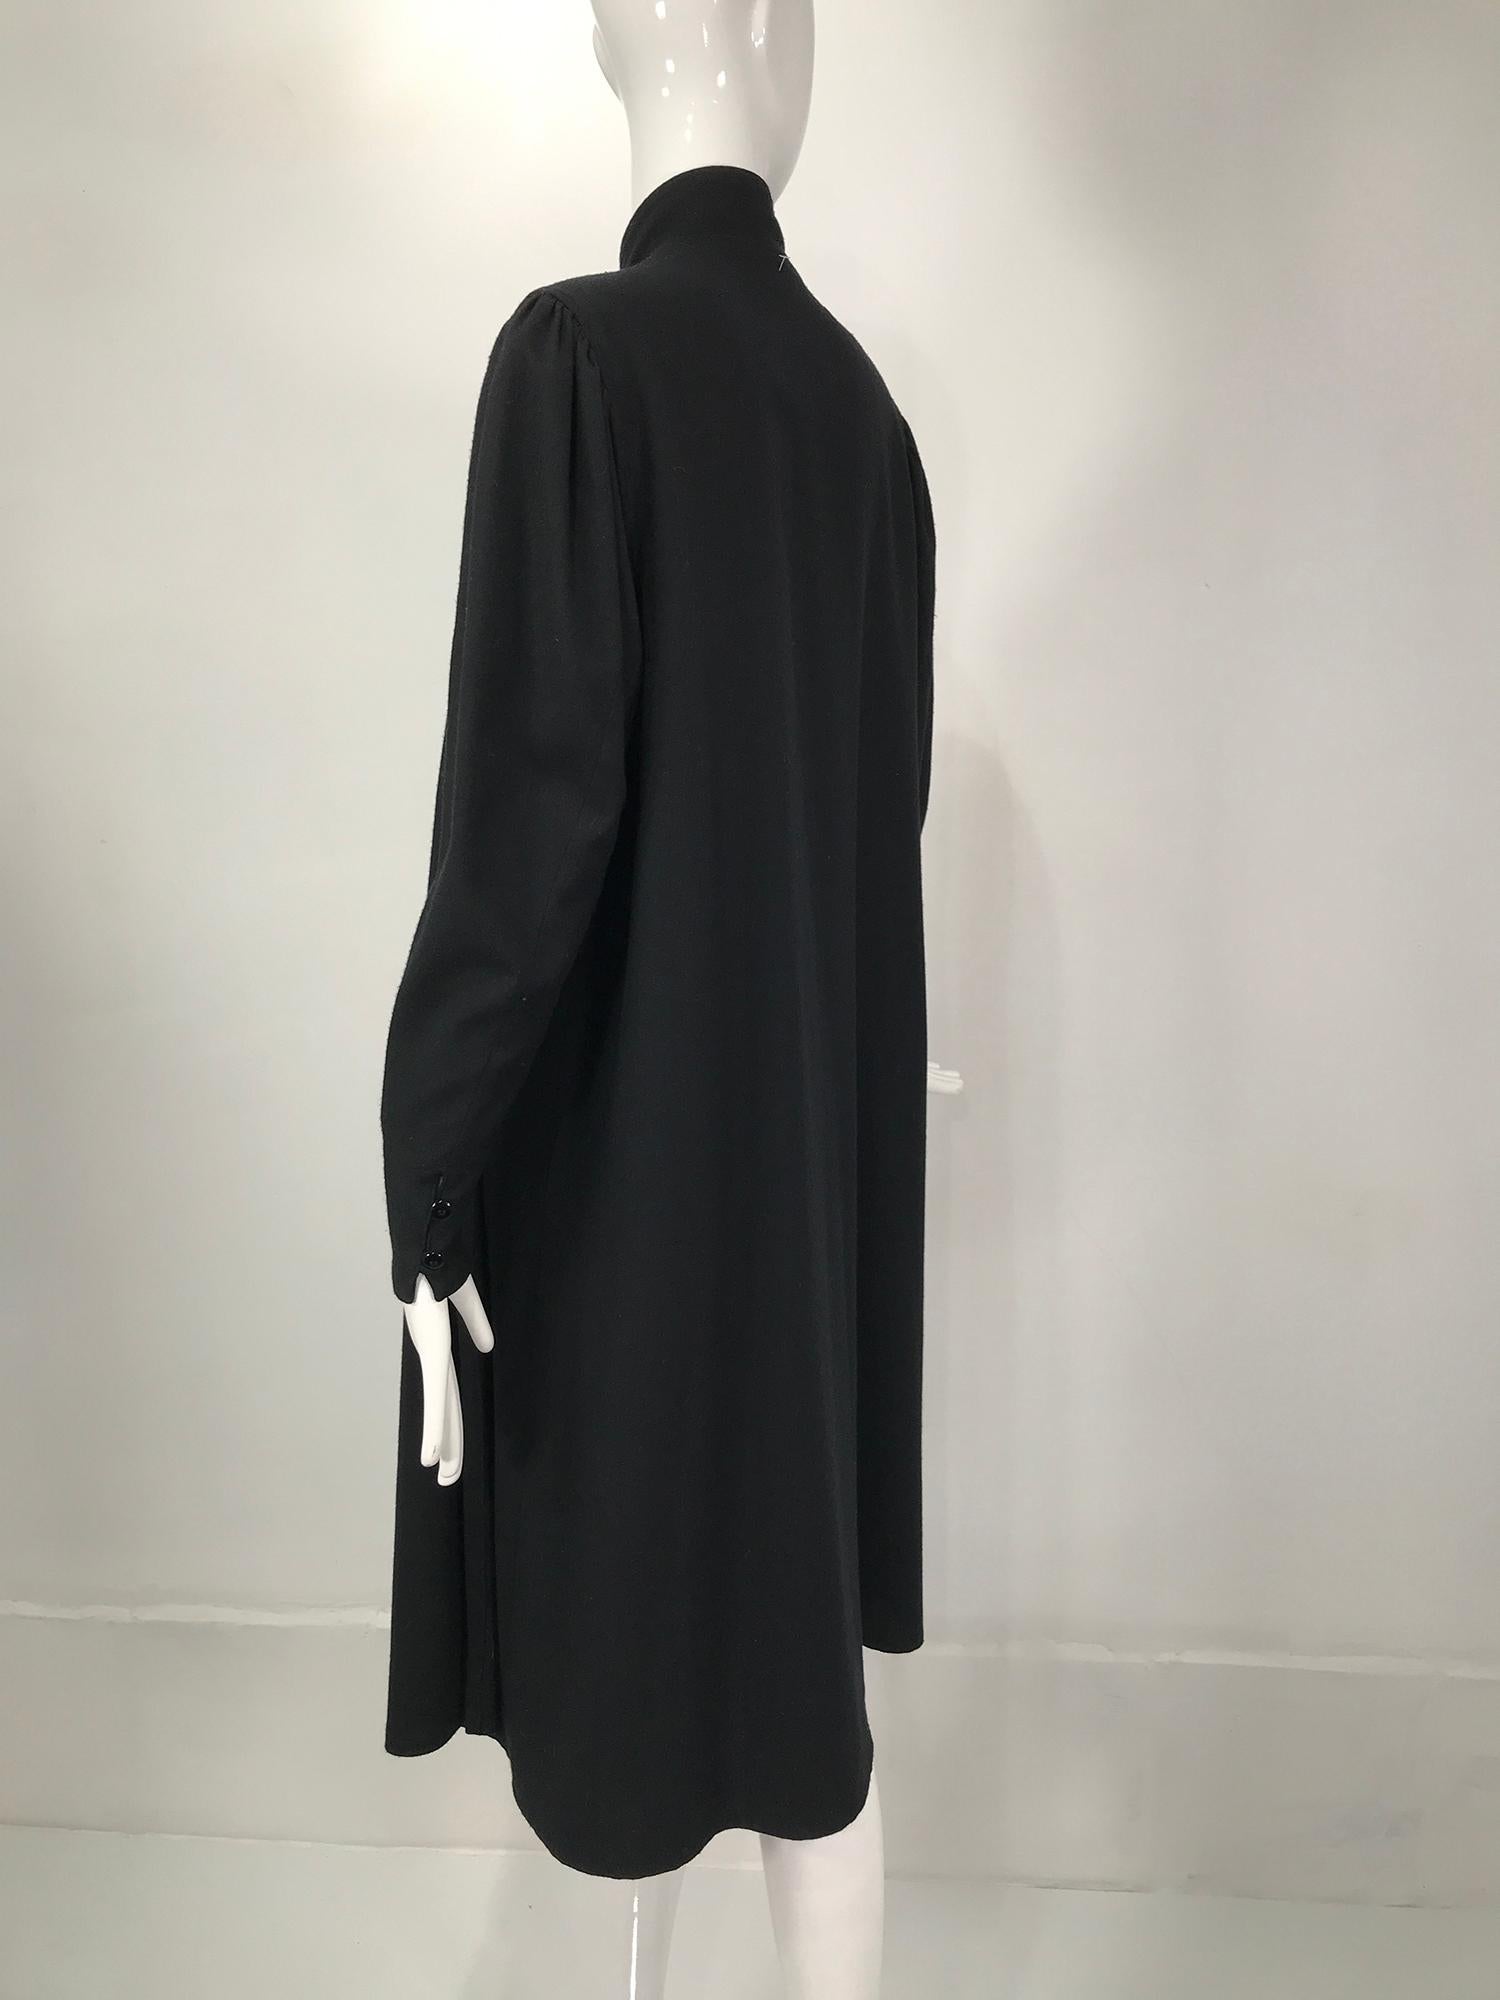 Kenzo Manteau de style Cheongsam en laine noire à double face, années 1980 Pour femmes en vente